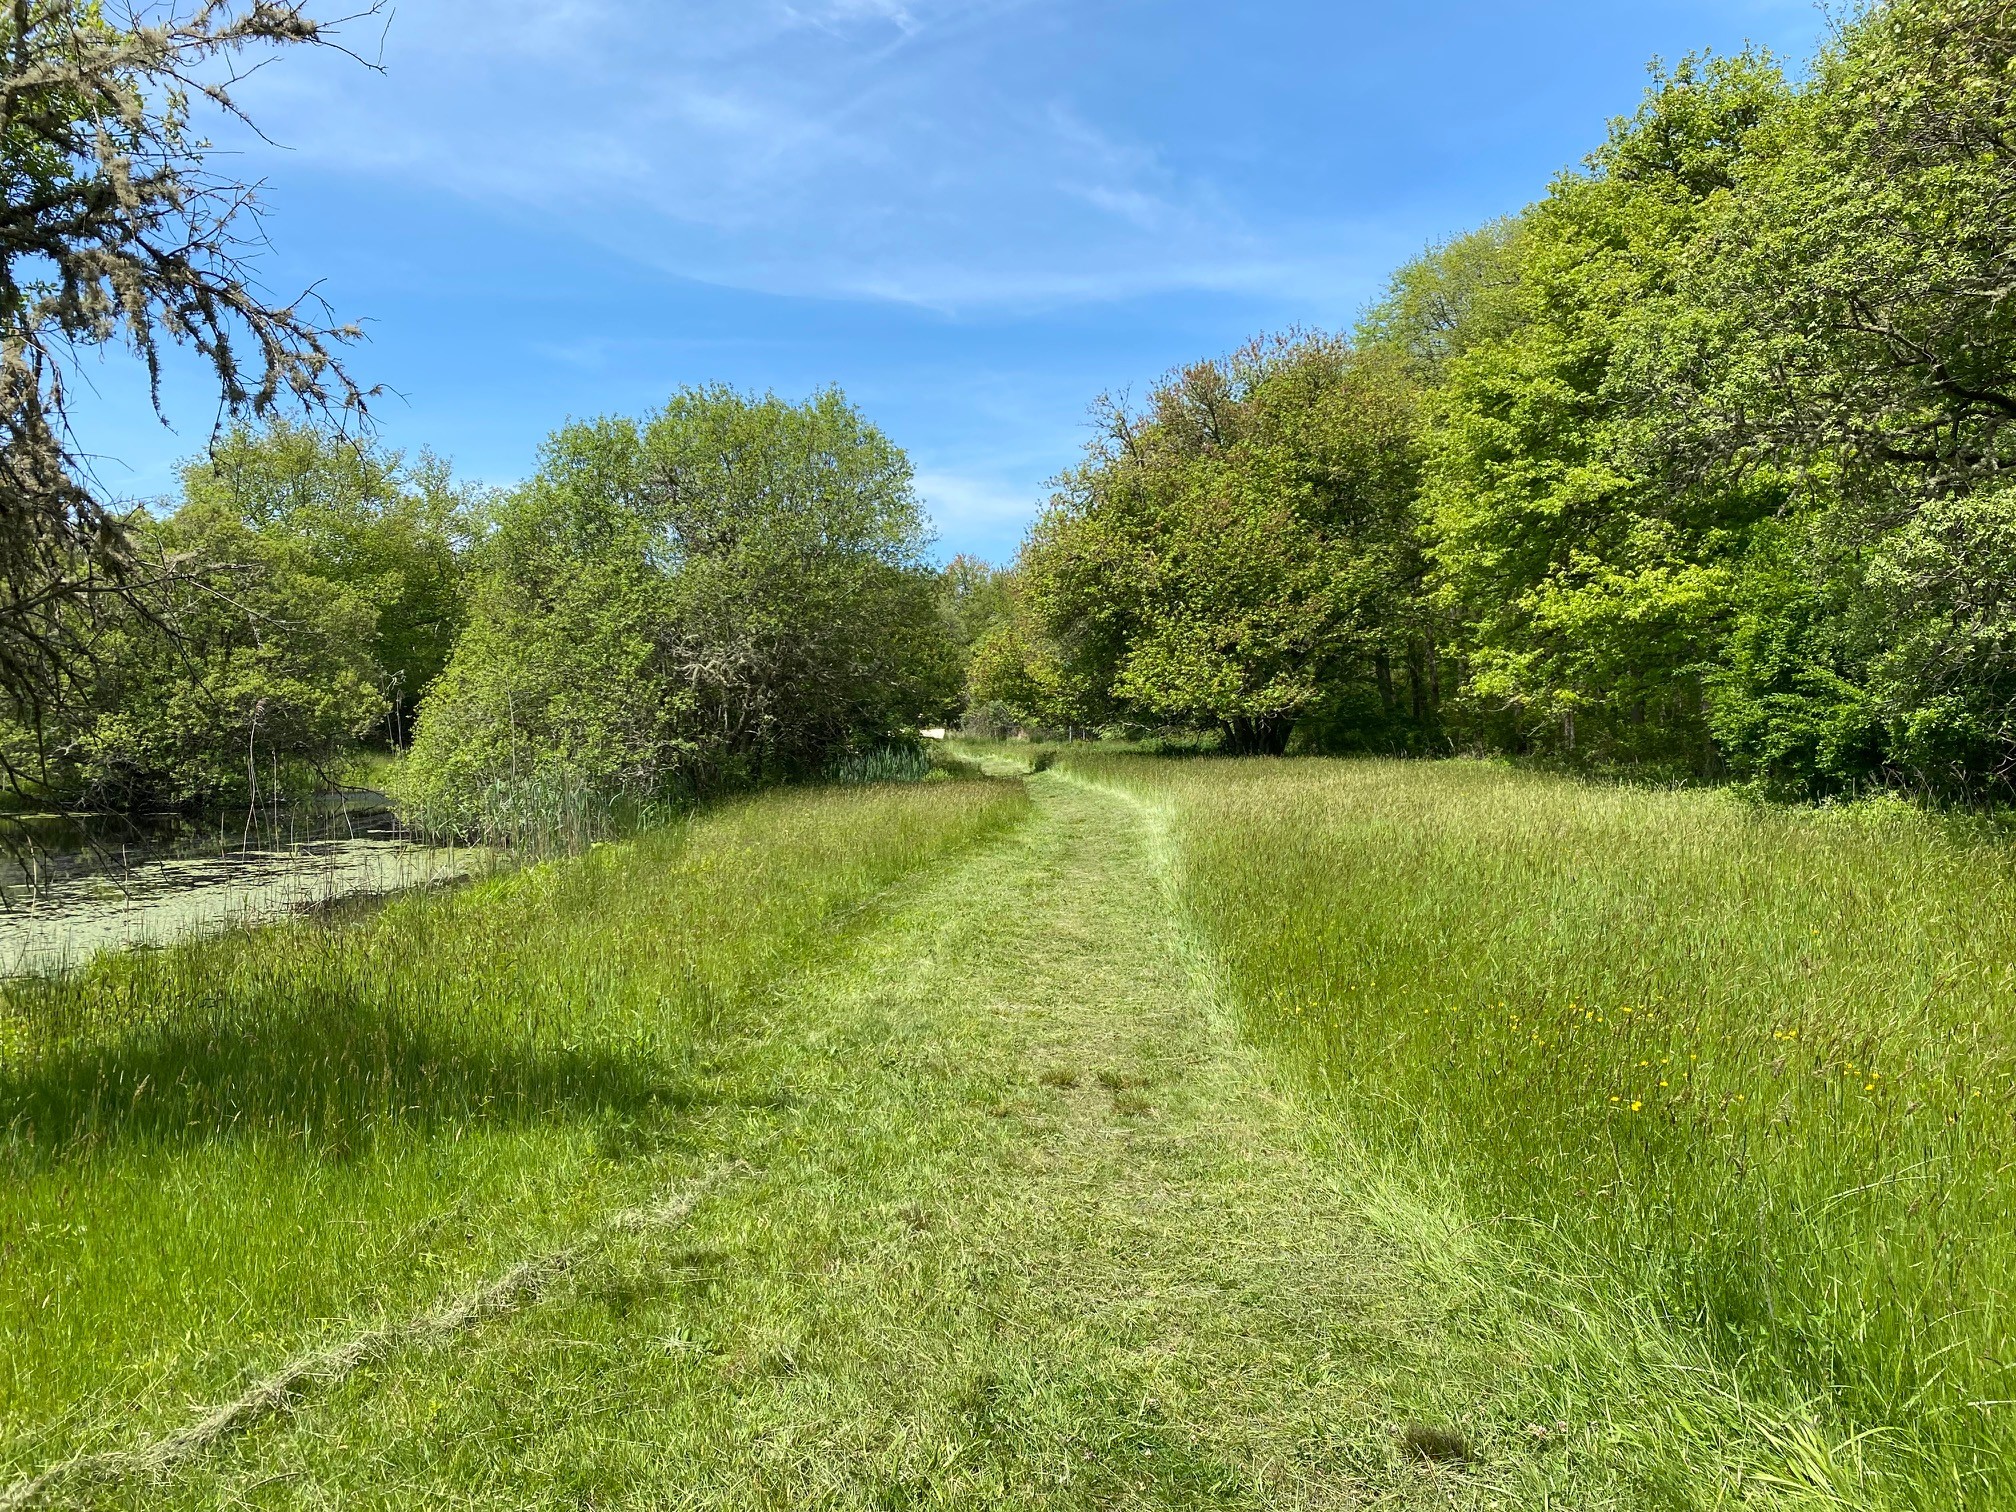 A freshly cut, grassy path leads through a meadow. 